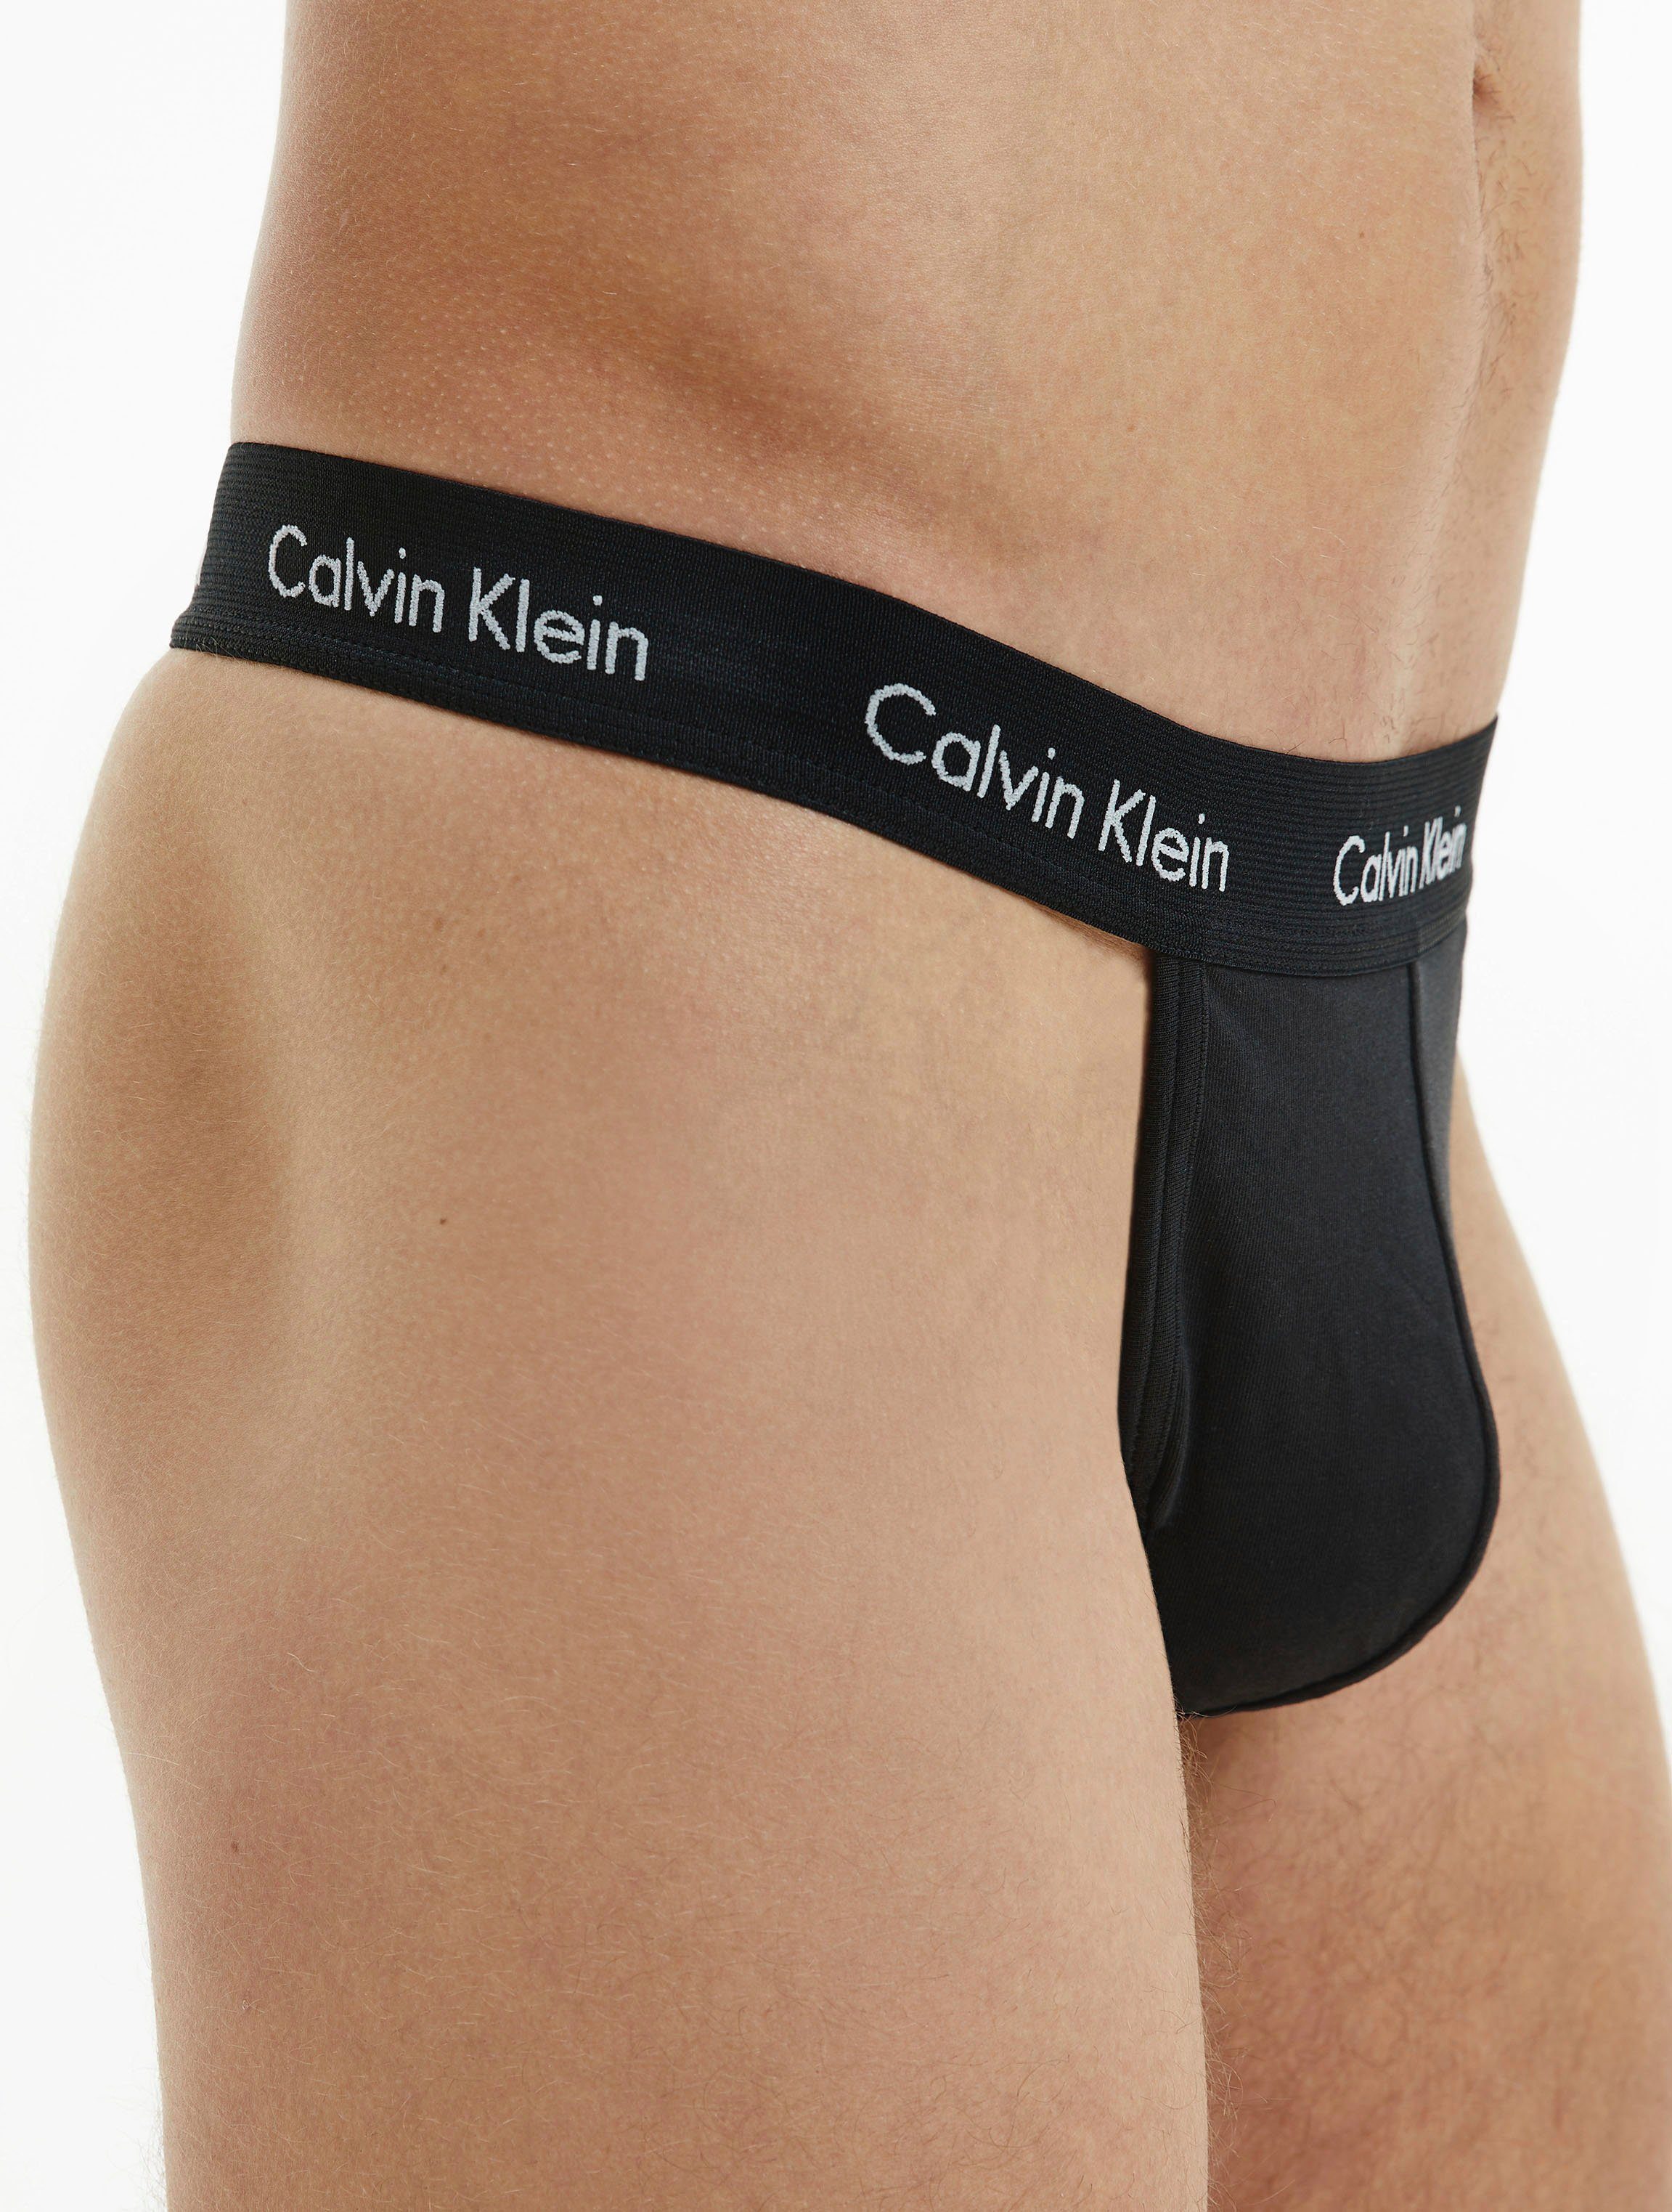 Calvin Klein Underwear Calvin Klein String (2-St) online kaufen | OTTO